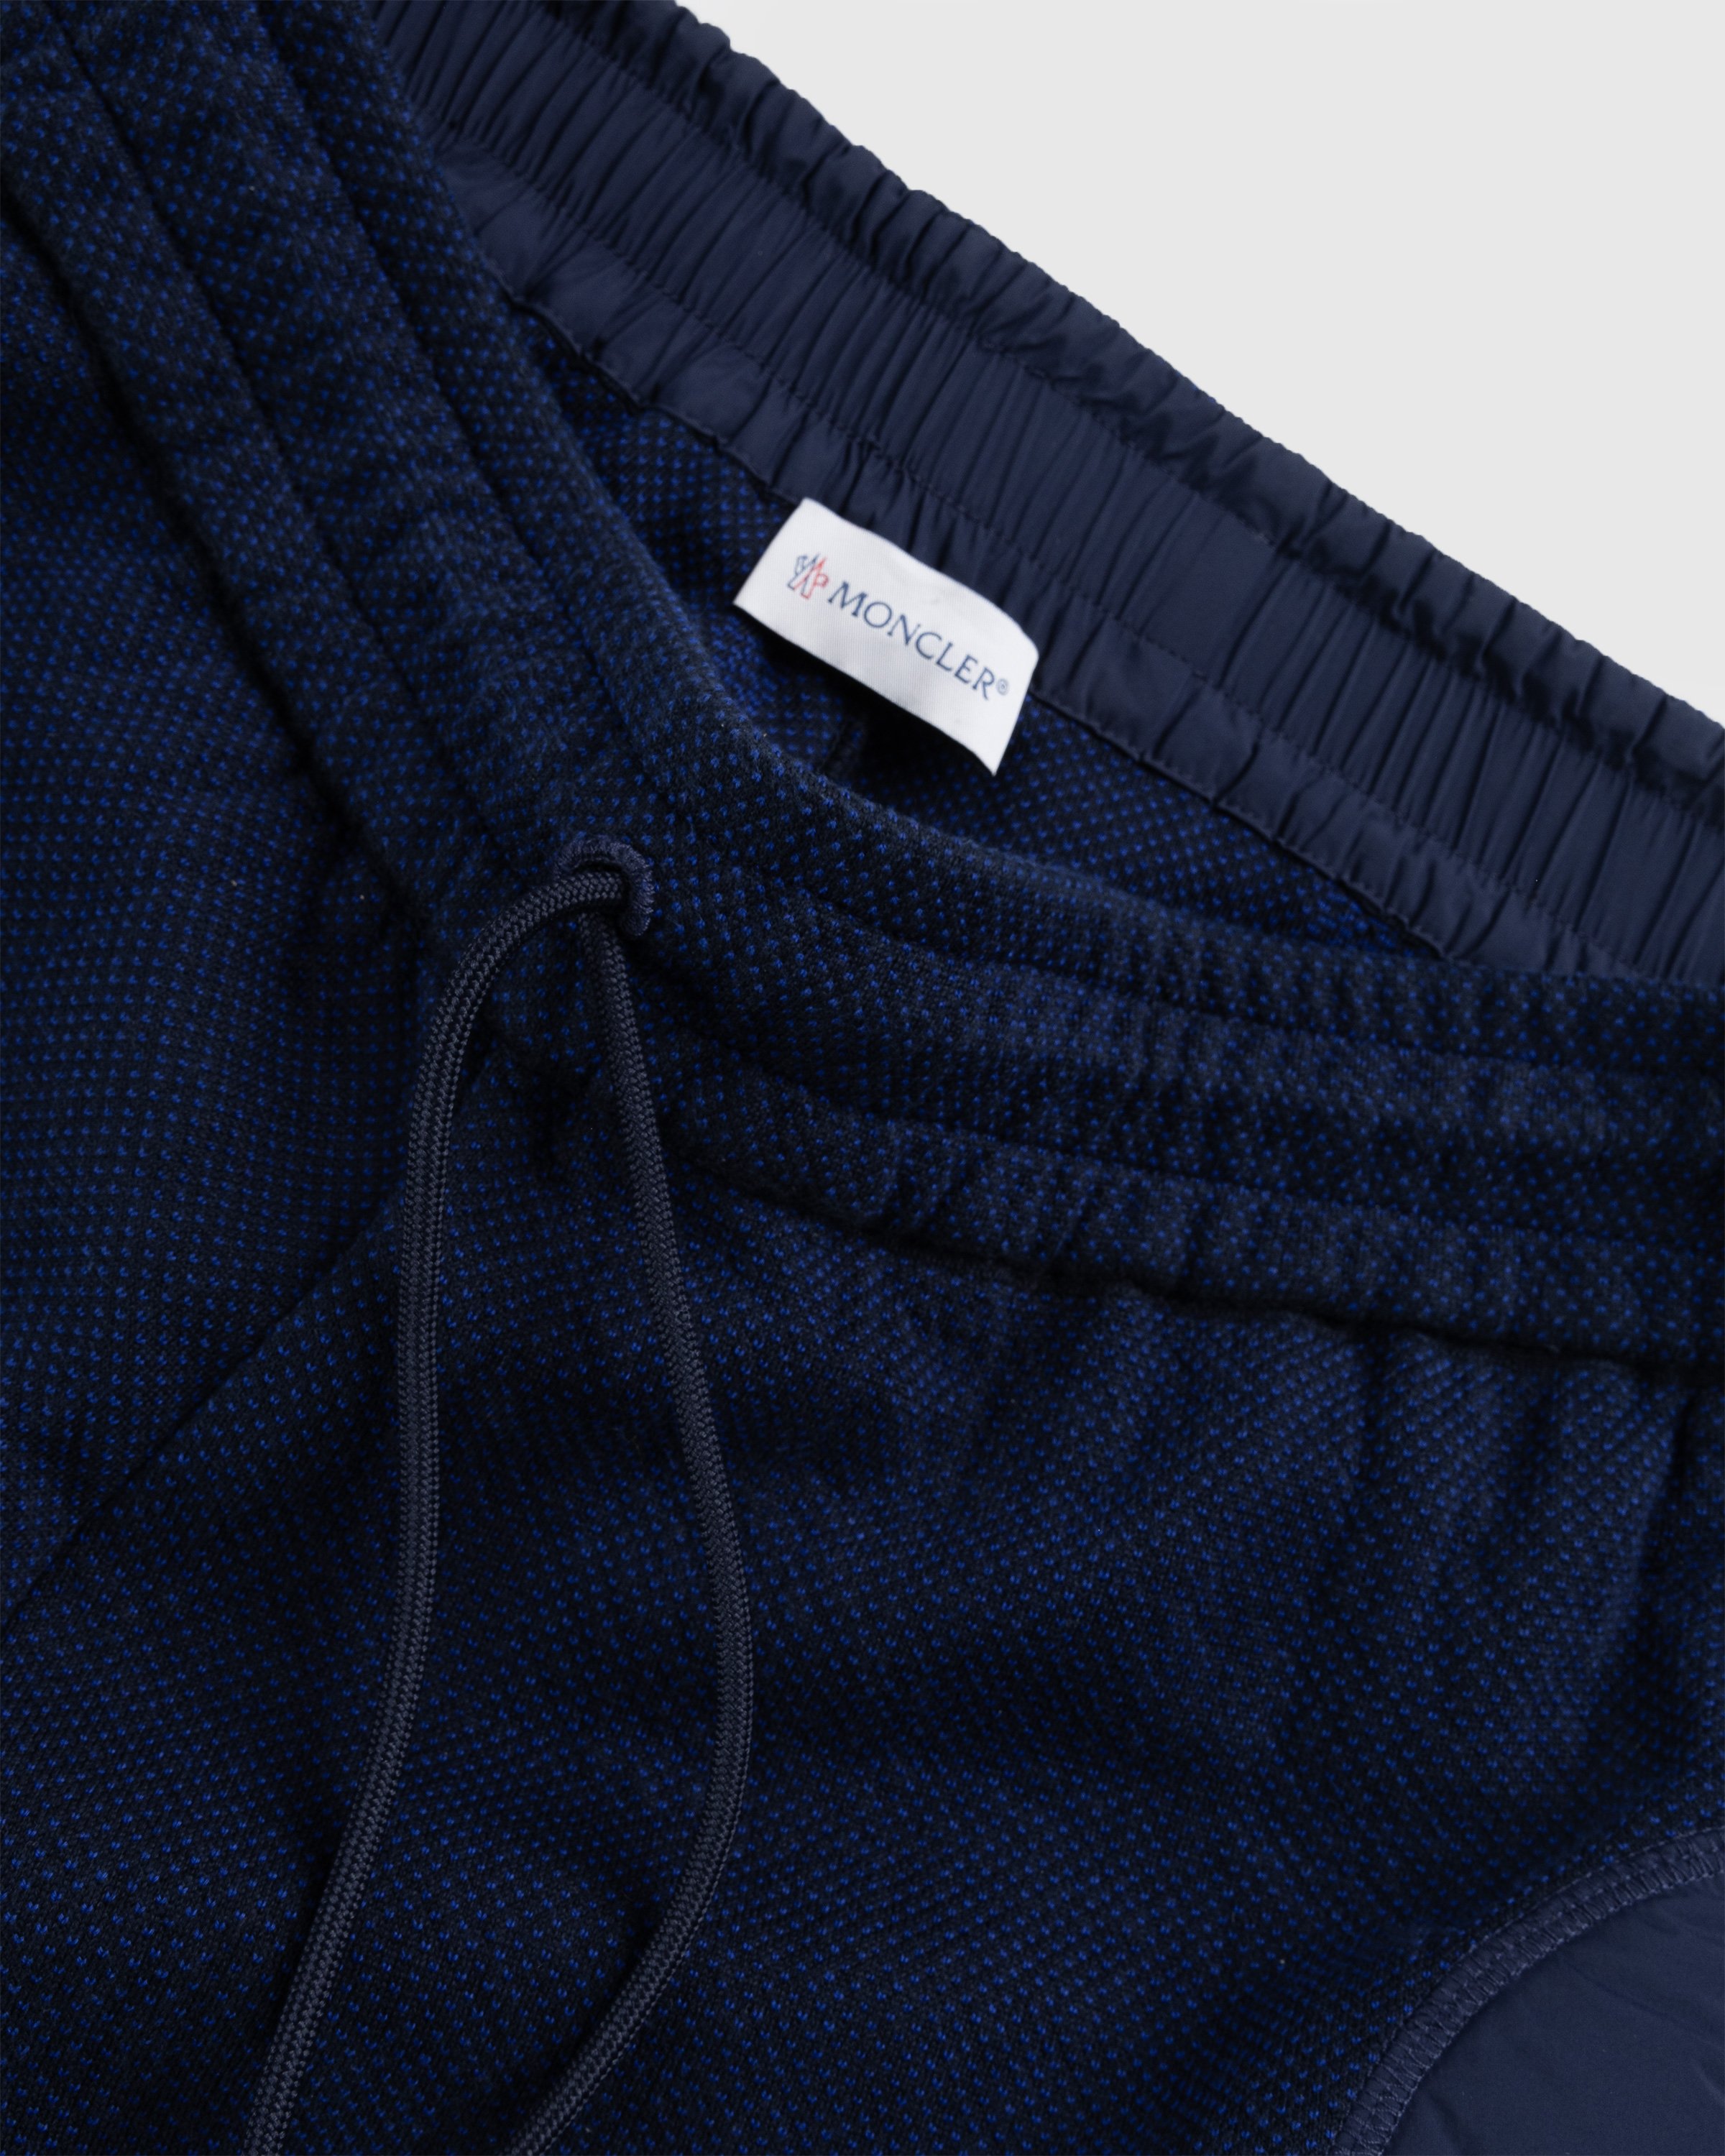 Moncler x Salehe Bembury - Padded Pants Blue - Clothing - Blue - Image 5